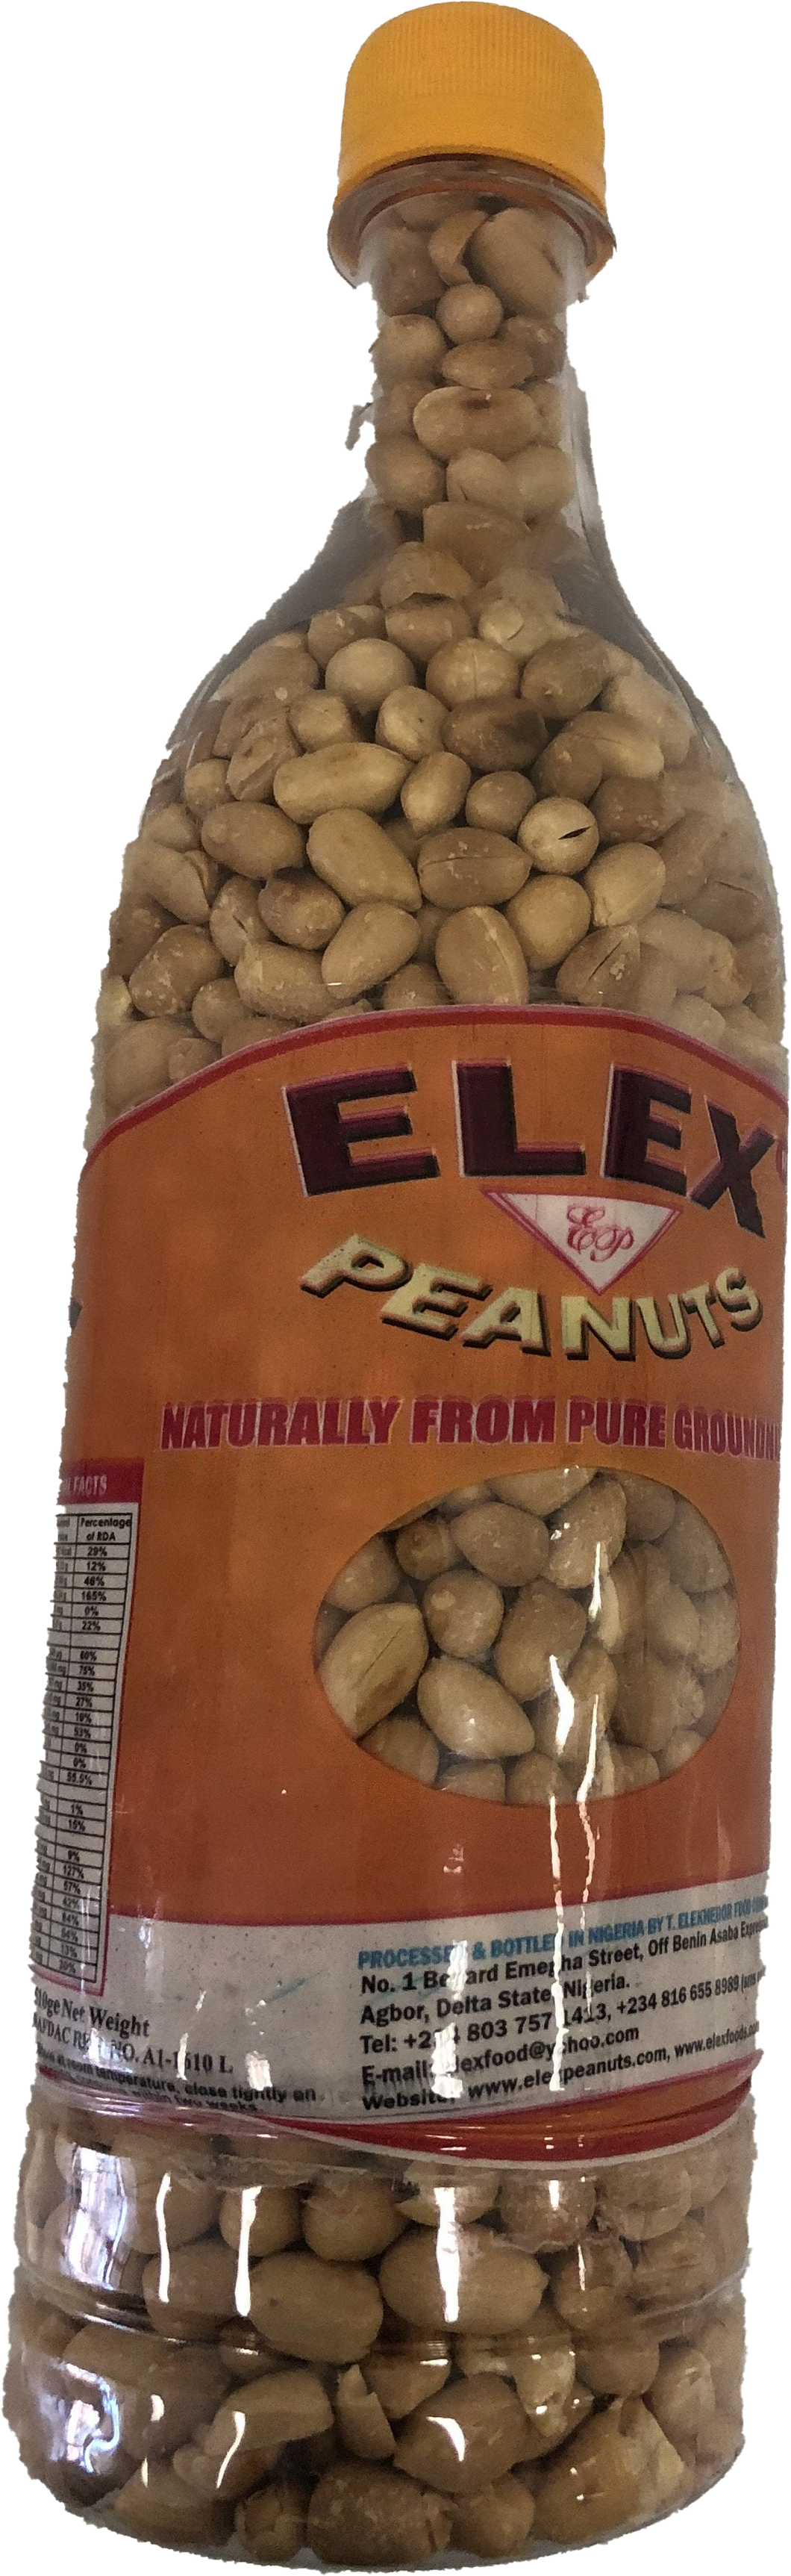 Elex Roasted Peanuts